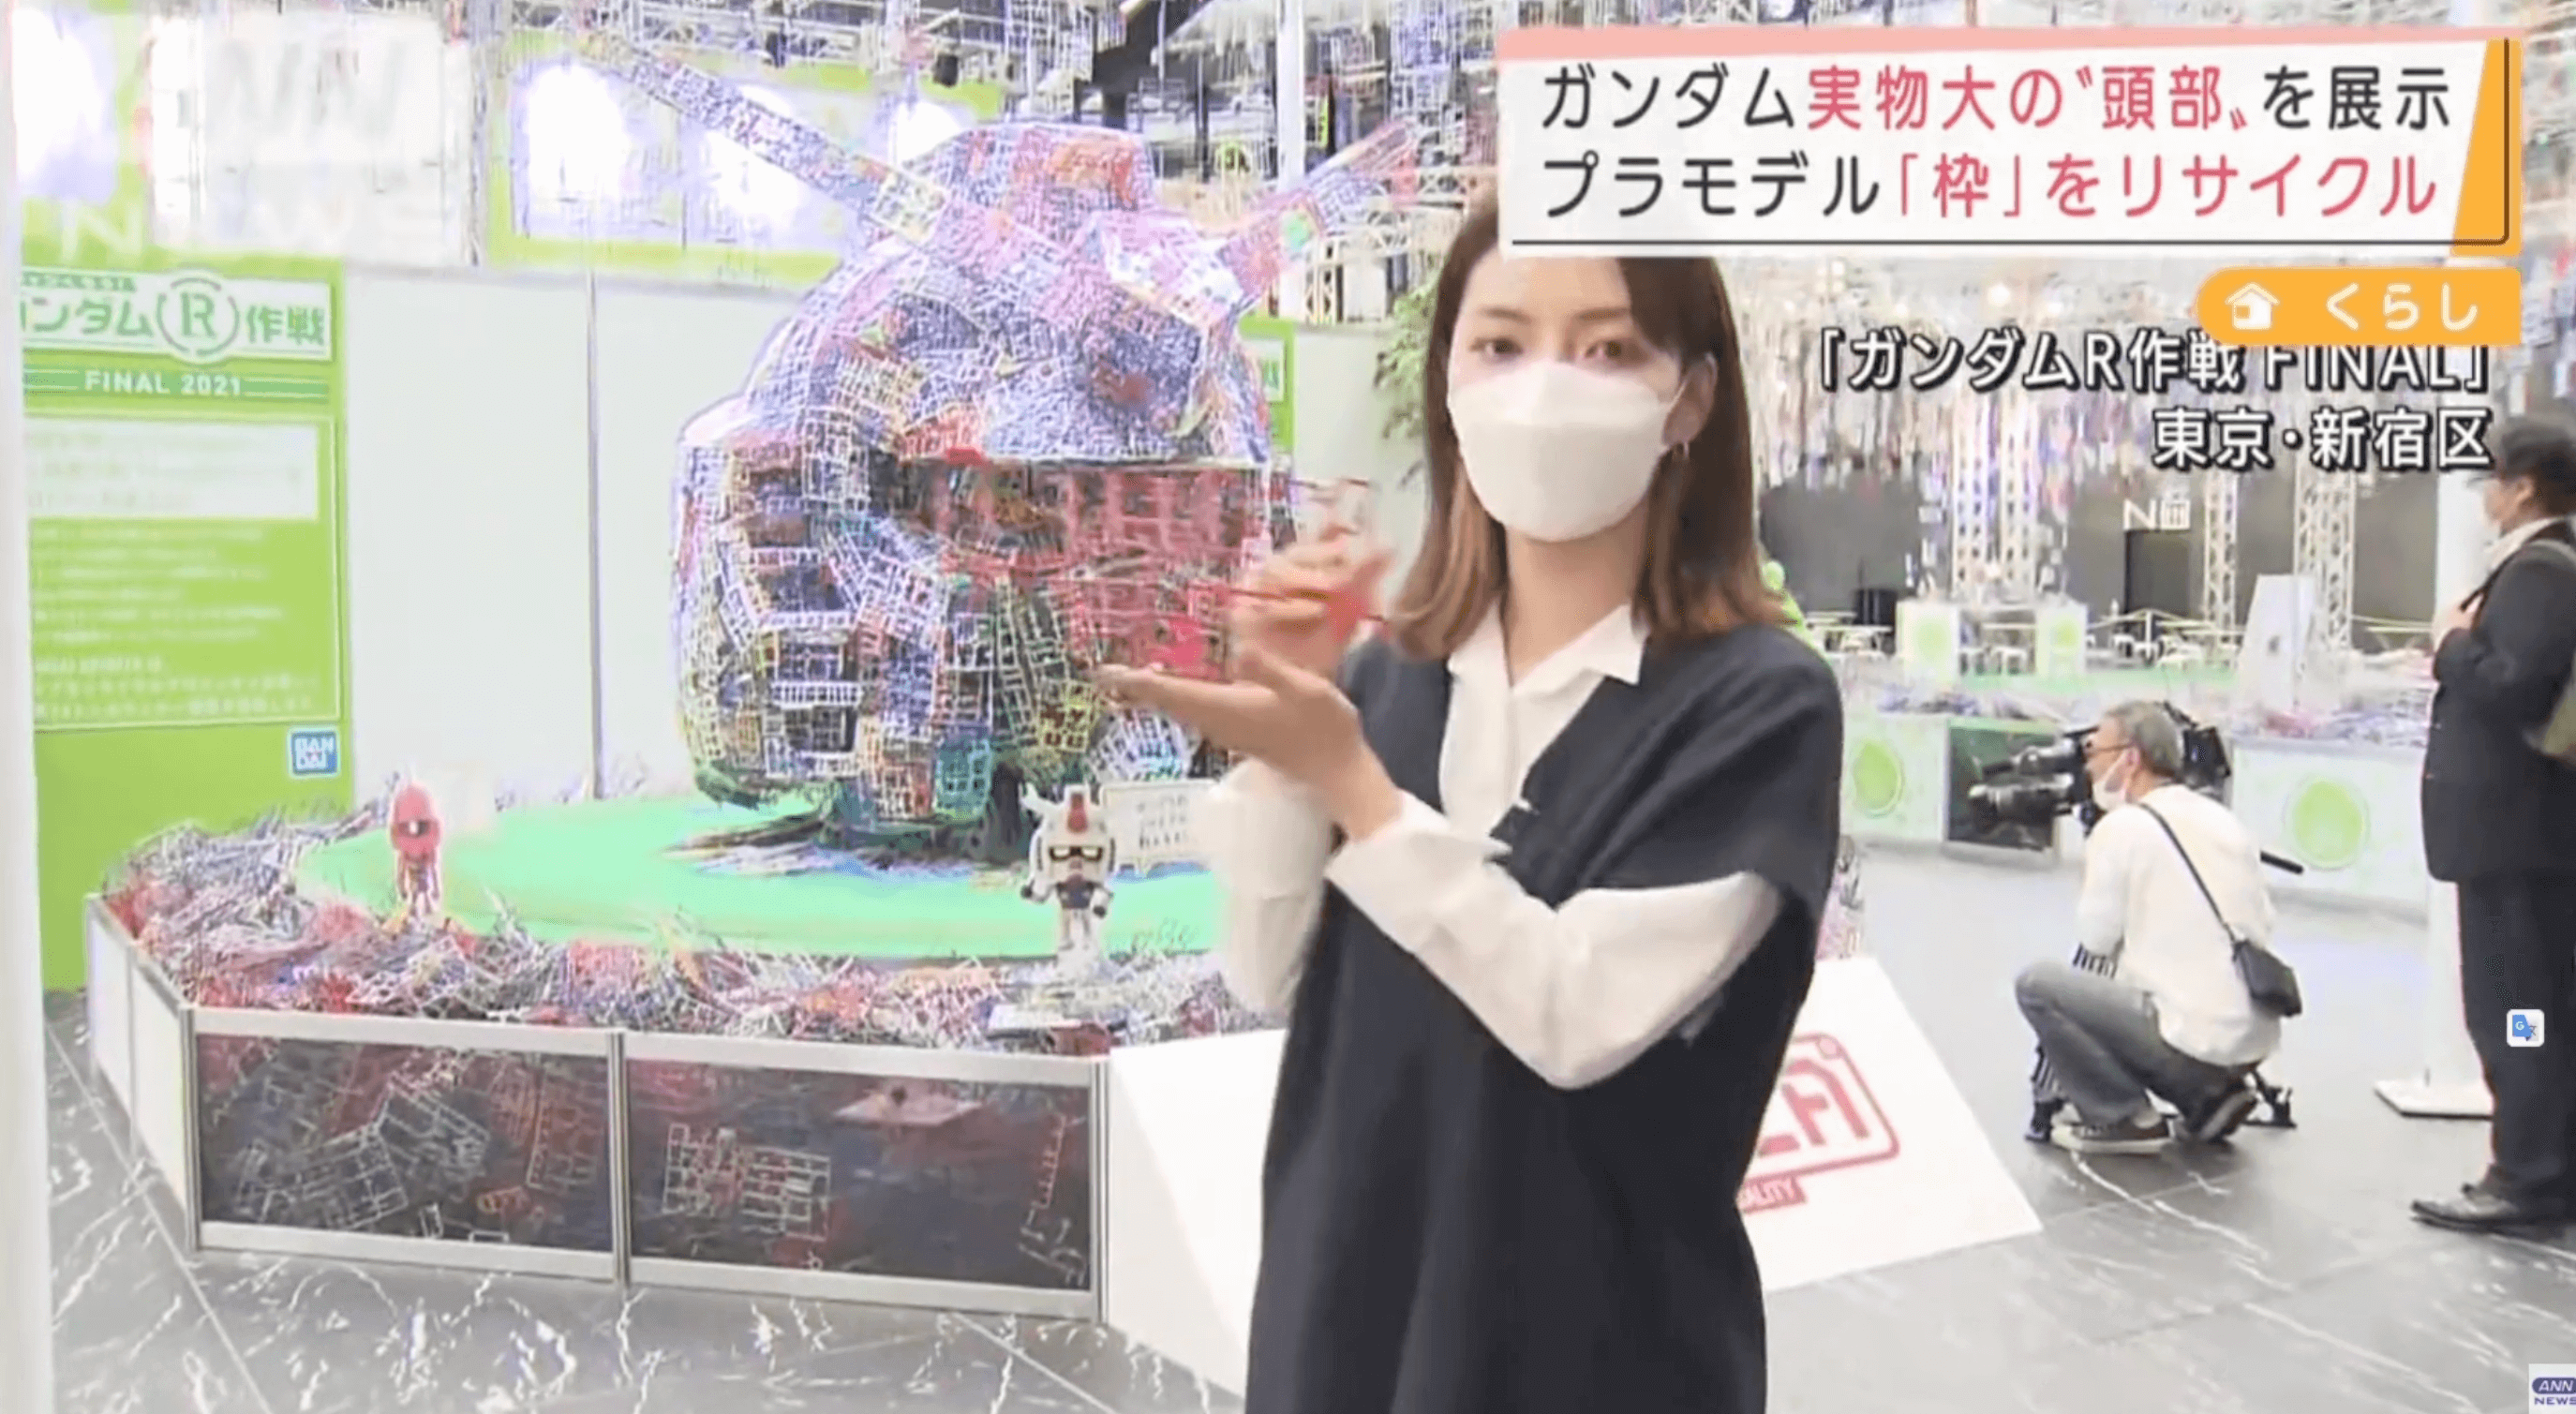 Reciclagem de plástico recria cabeça de Gundam em tamanho real no Japão